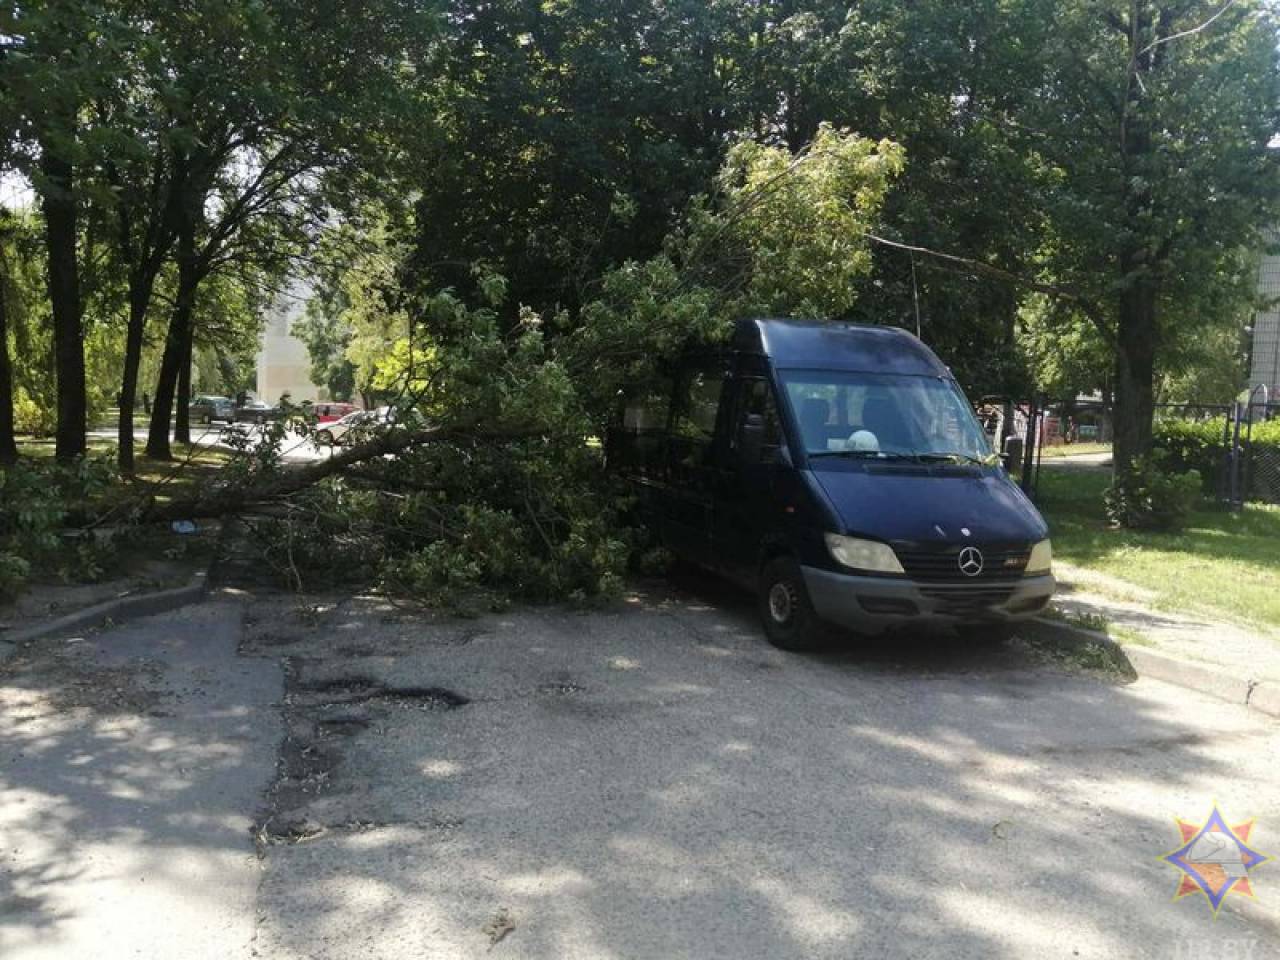 Только в Гродно упали семь деревьев: гродненские спасатели подвели «итоги» грозового фронта, который прошел через регион